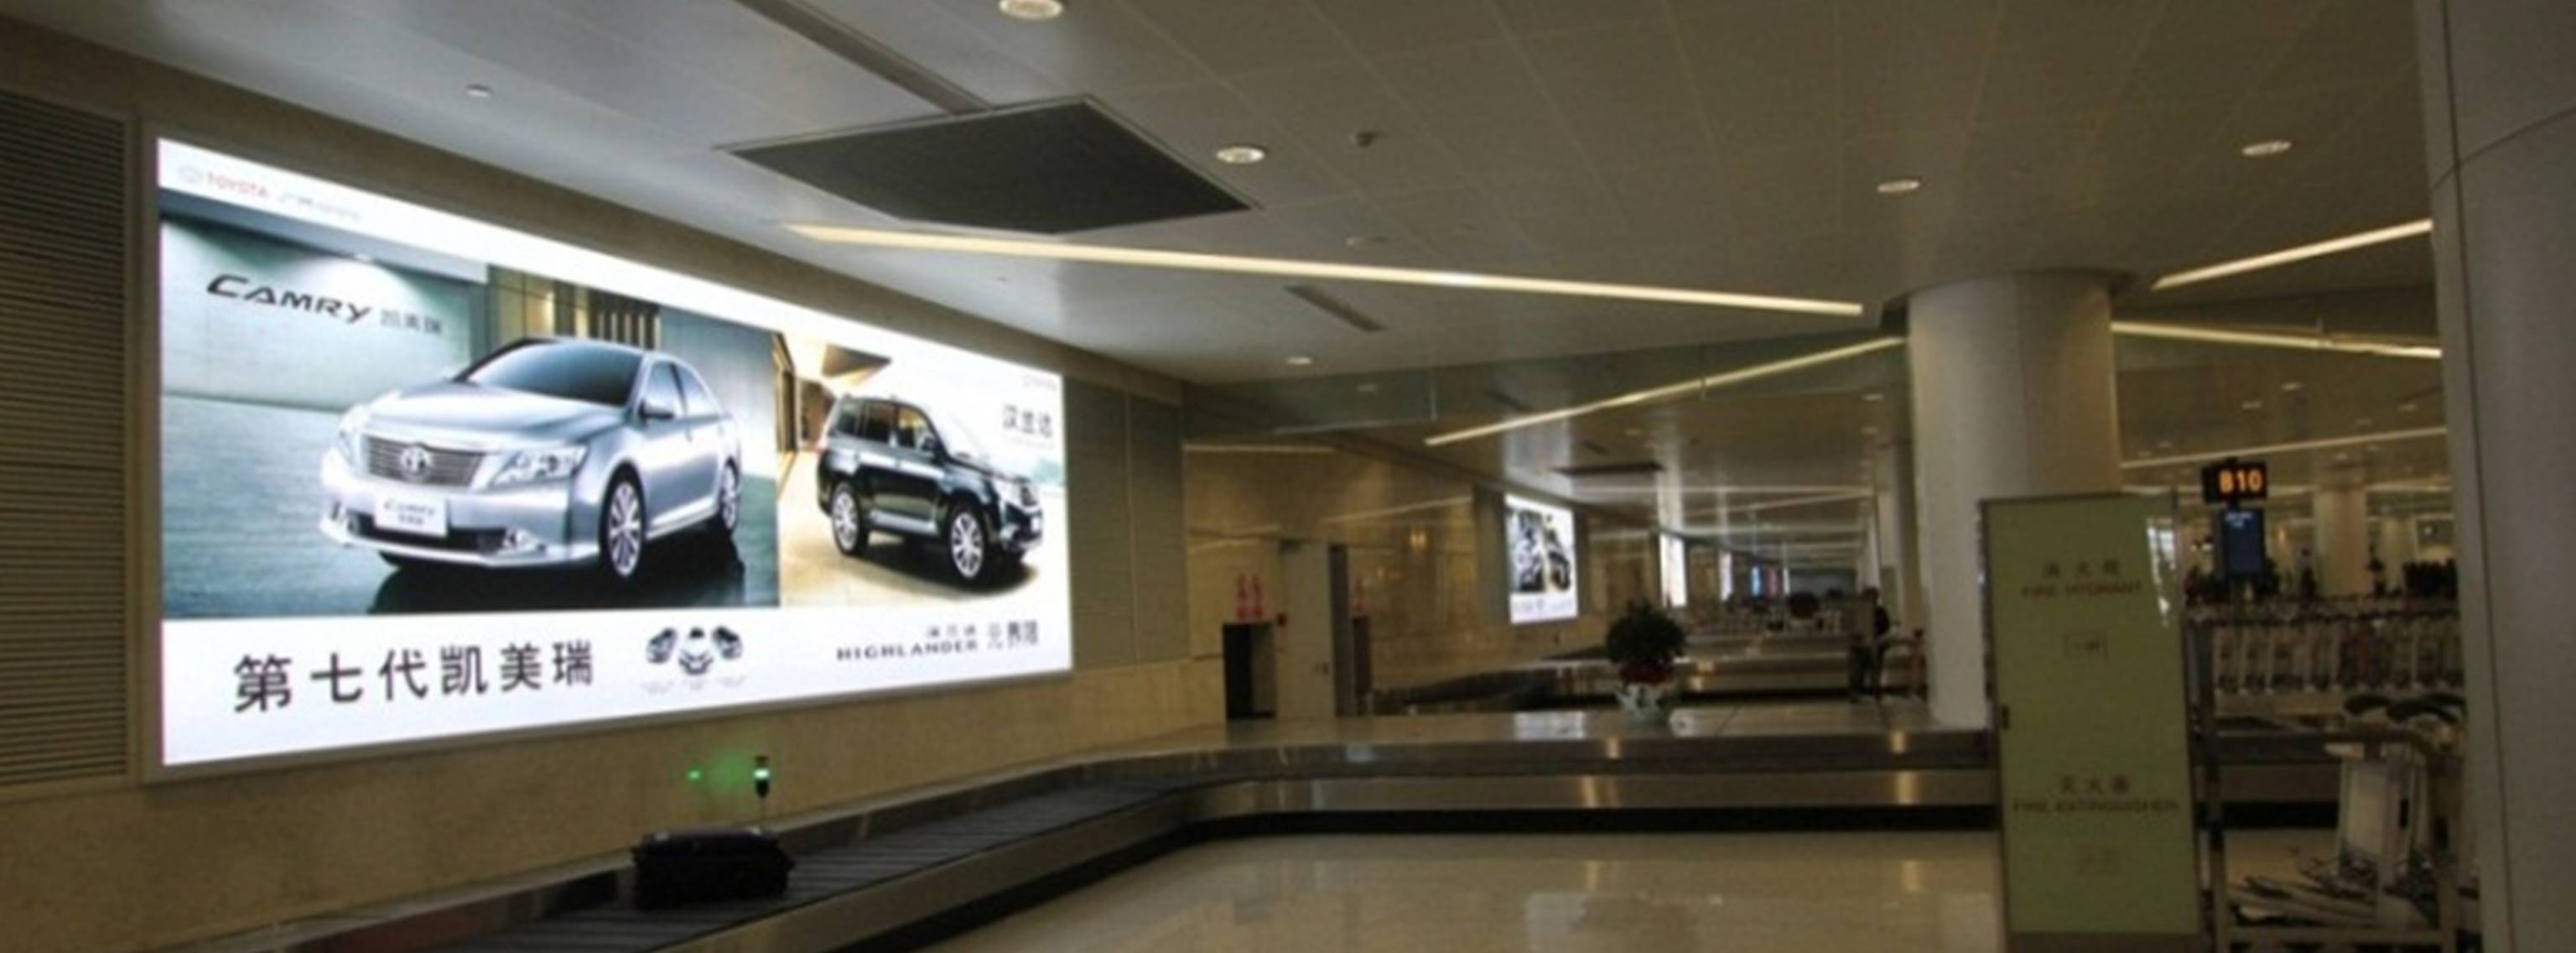 杭州萧山机场广告-T3行李转盘灯箱DB78